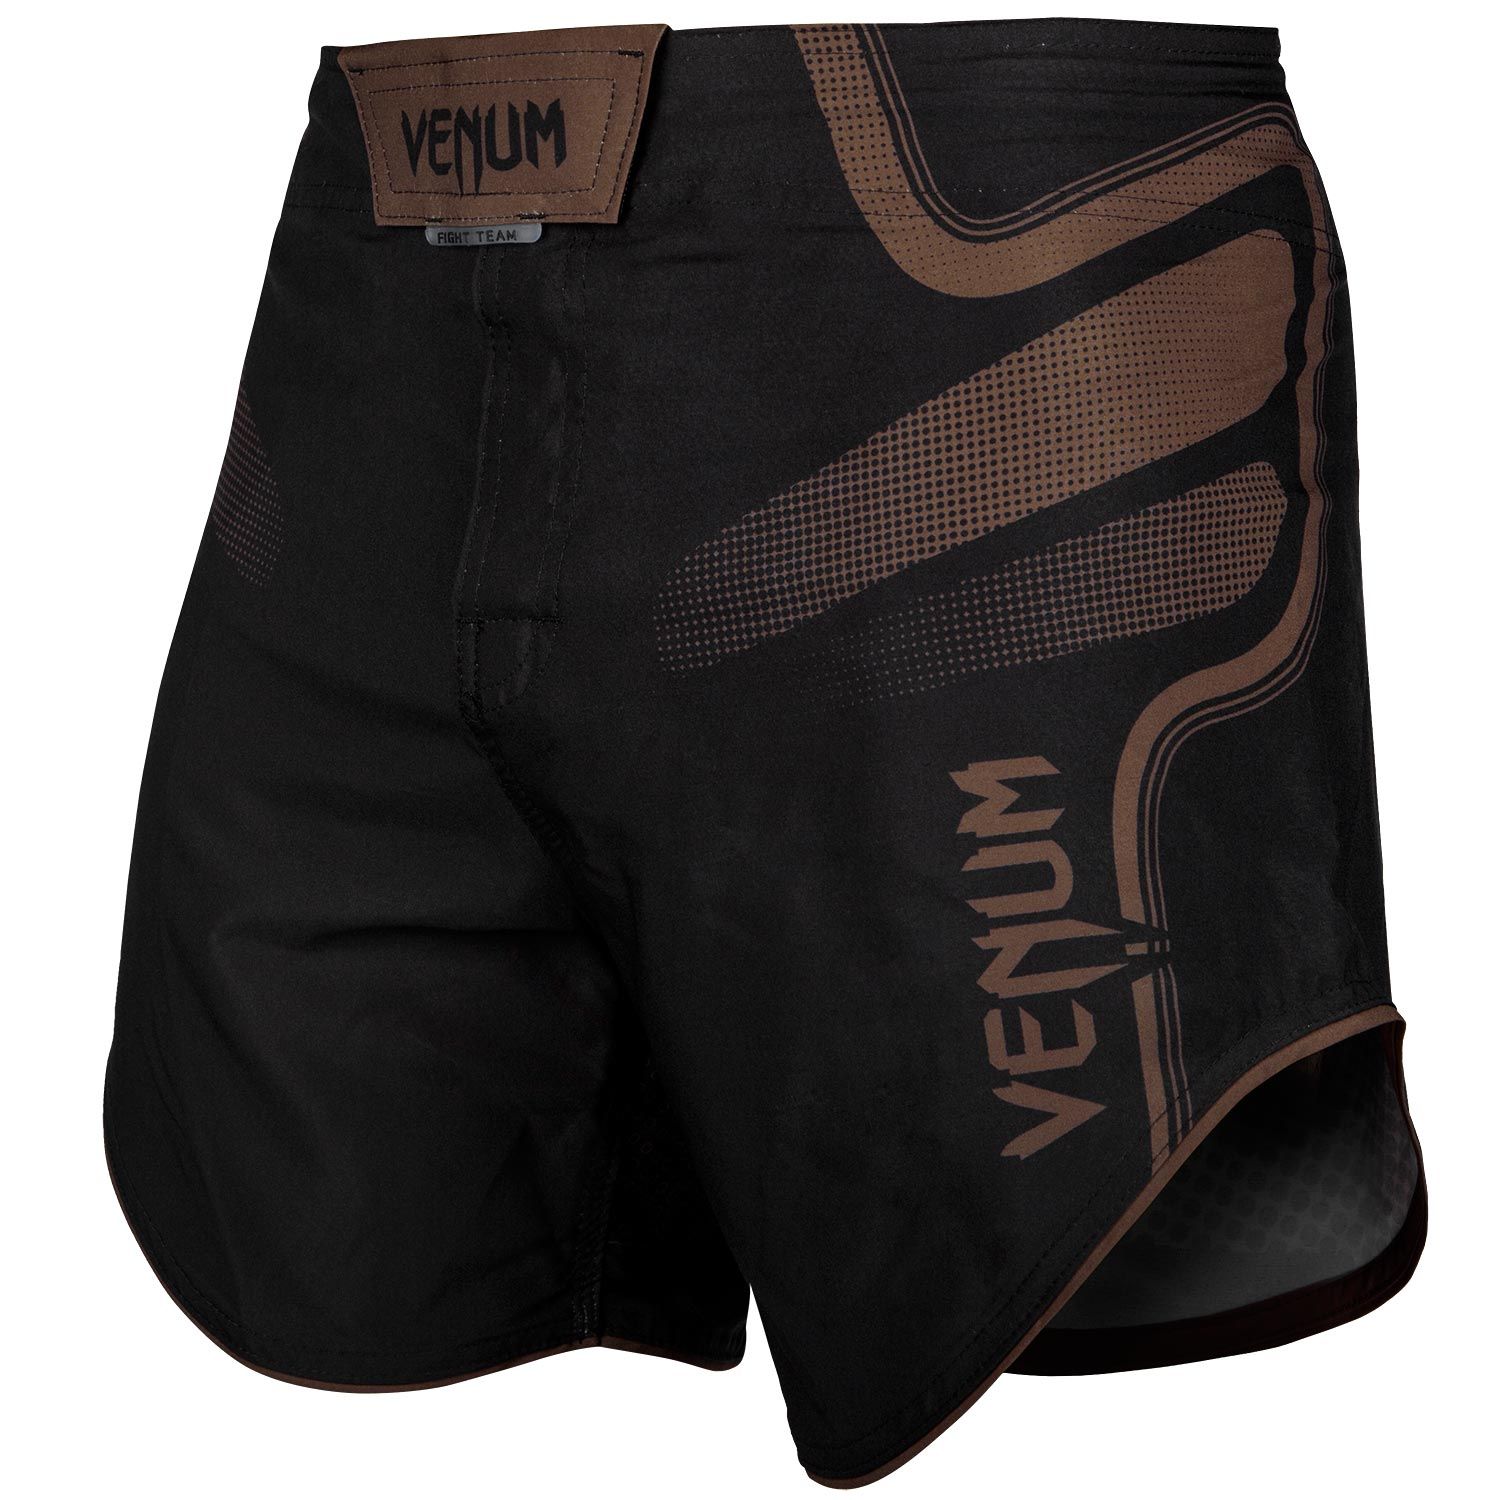 Pantalones MMA Venum Tempest 2.0 - Negro/Marrón